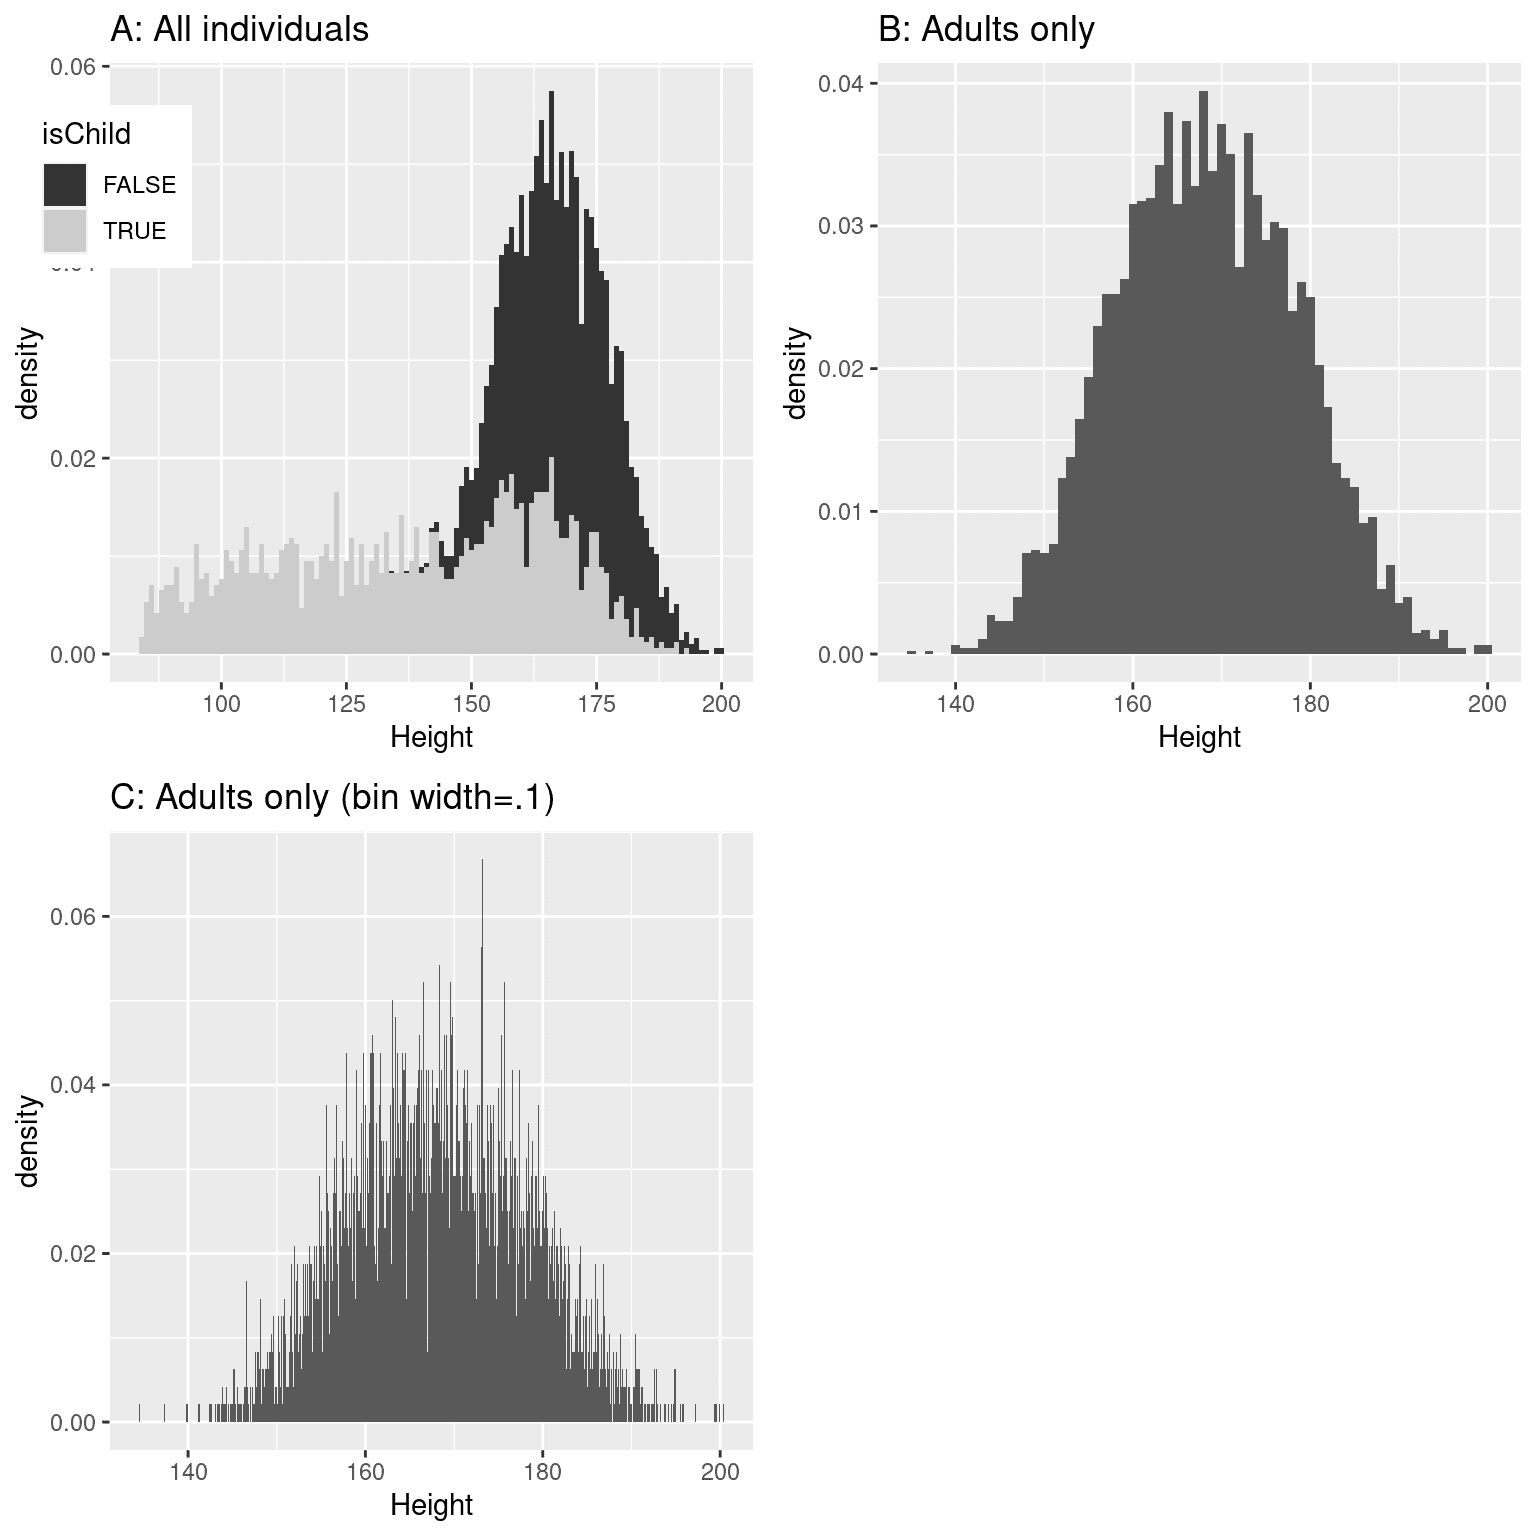 NHANES 身高直方图。A：分别绘制儿童（灰色）和成年人（黑色）的值。B：仅成年人的值。C：与 B 相同，但 bin 宽度=0.1